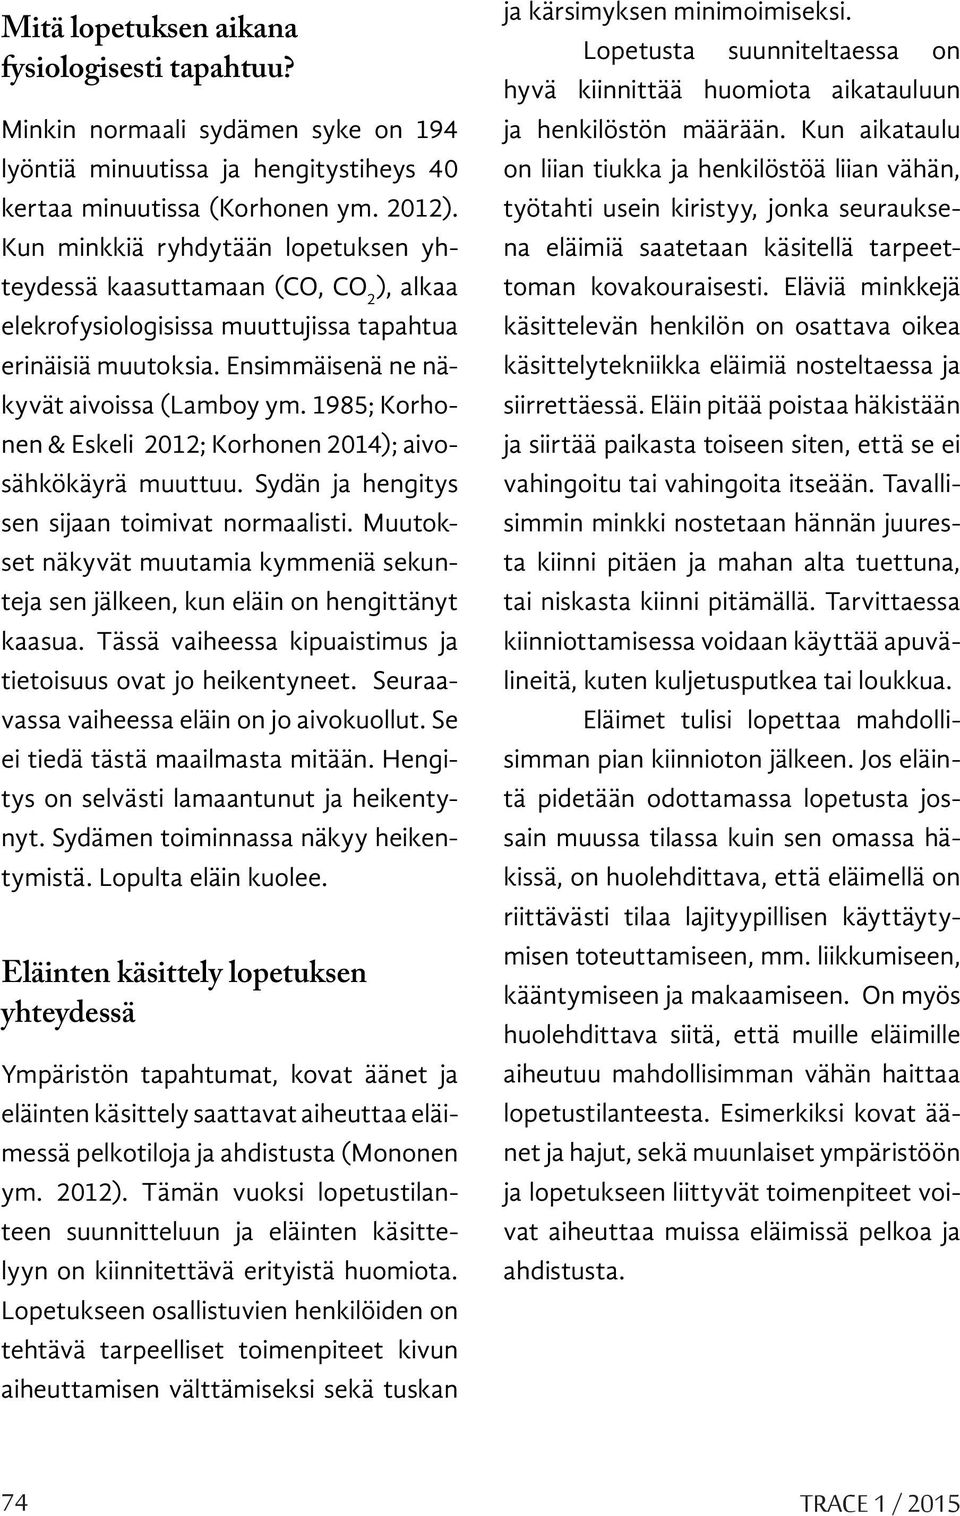 1985; Korhonen & Eskeli 2012; Korhonen 2014); aivosähkökäyrä muuttuu. Sydän ja hengitys sen sijaan toimivat normaalisti.